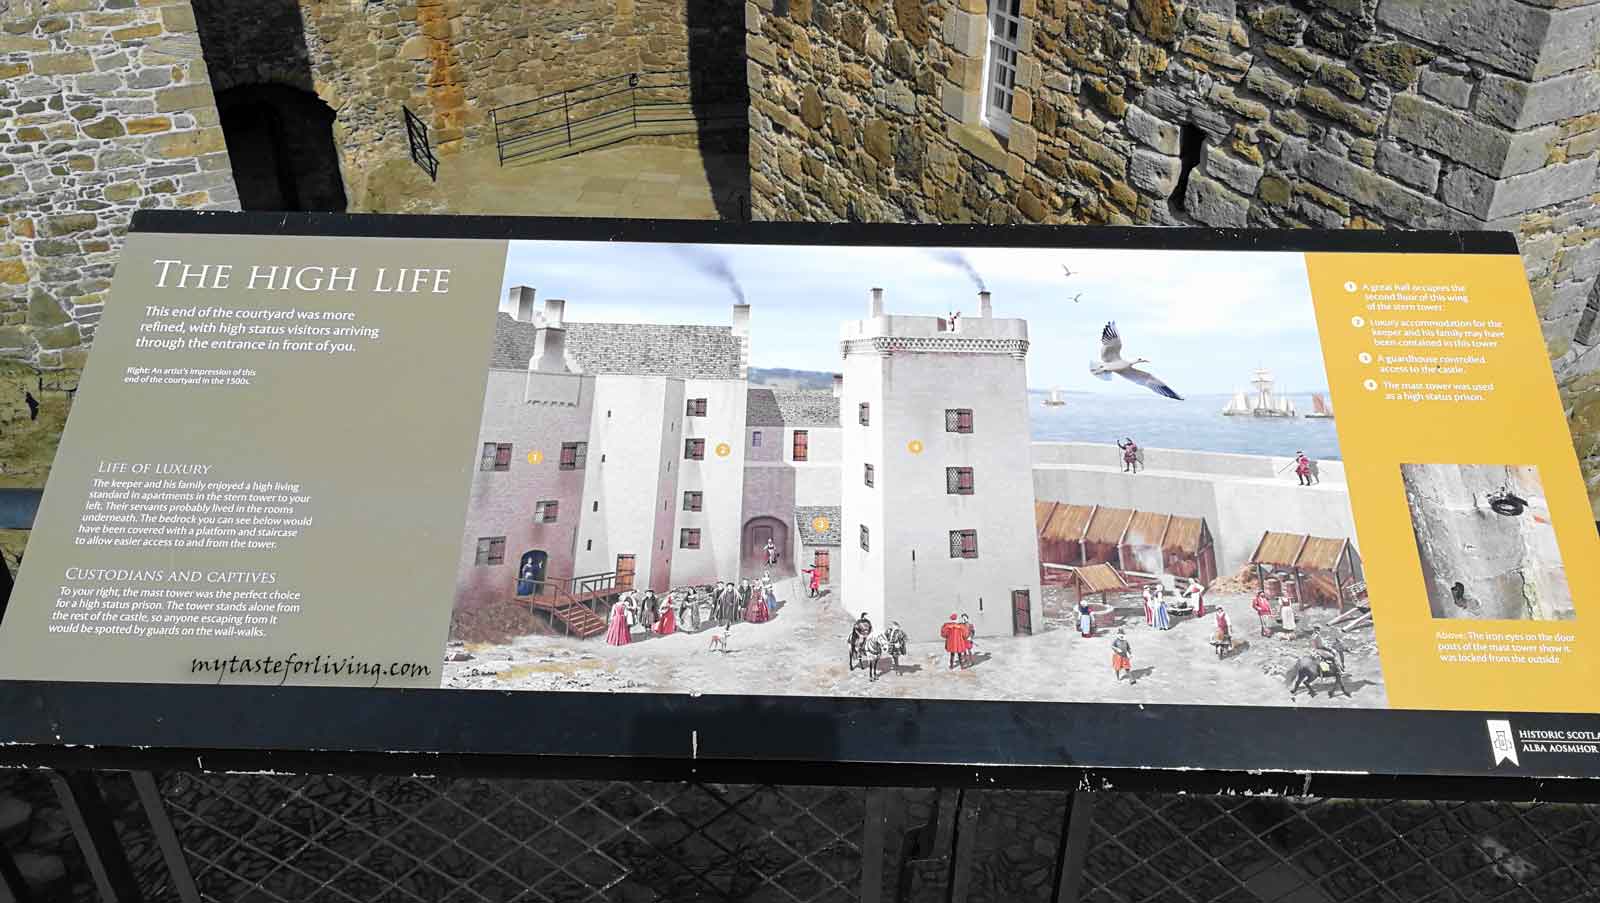 Замъкът на Чернотата (Blackness castle) е крепост от 15-ти век, близо до село Blackness, Шотландия, разположен на южния бряг на река Фирт ъф Форт (Firth of Forth). Използван е за филмова локация на сериала „Друговремец“ (Outlander) под името Форт Уилям, където главния герой Джейми Фрейзър е бичуван от Черния Джак Рандал. 